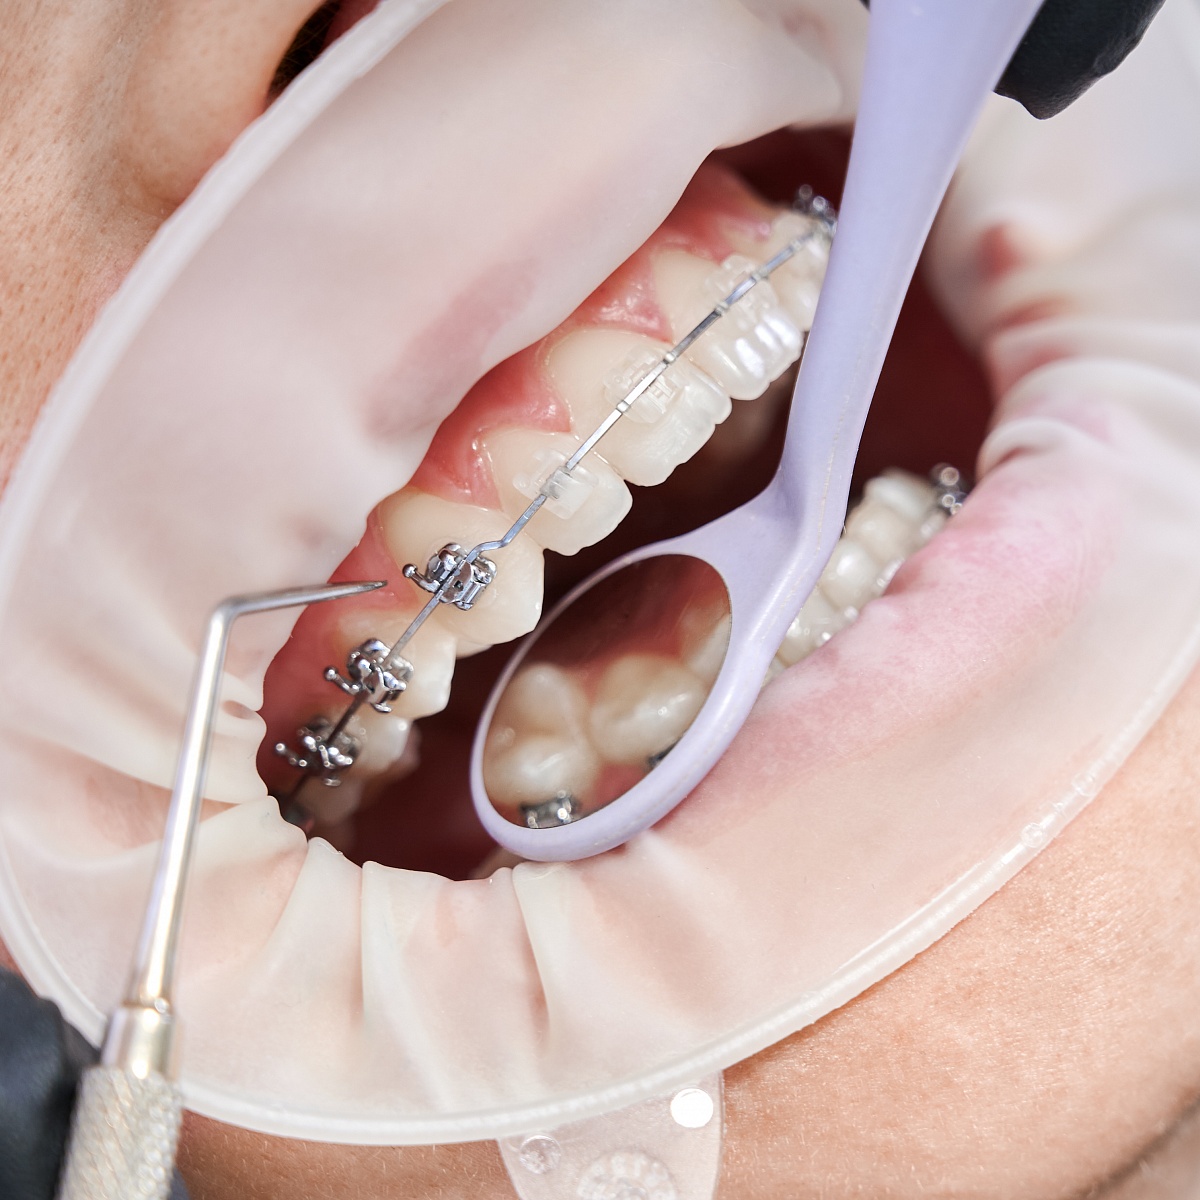 Методы лечения в ортодонтии